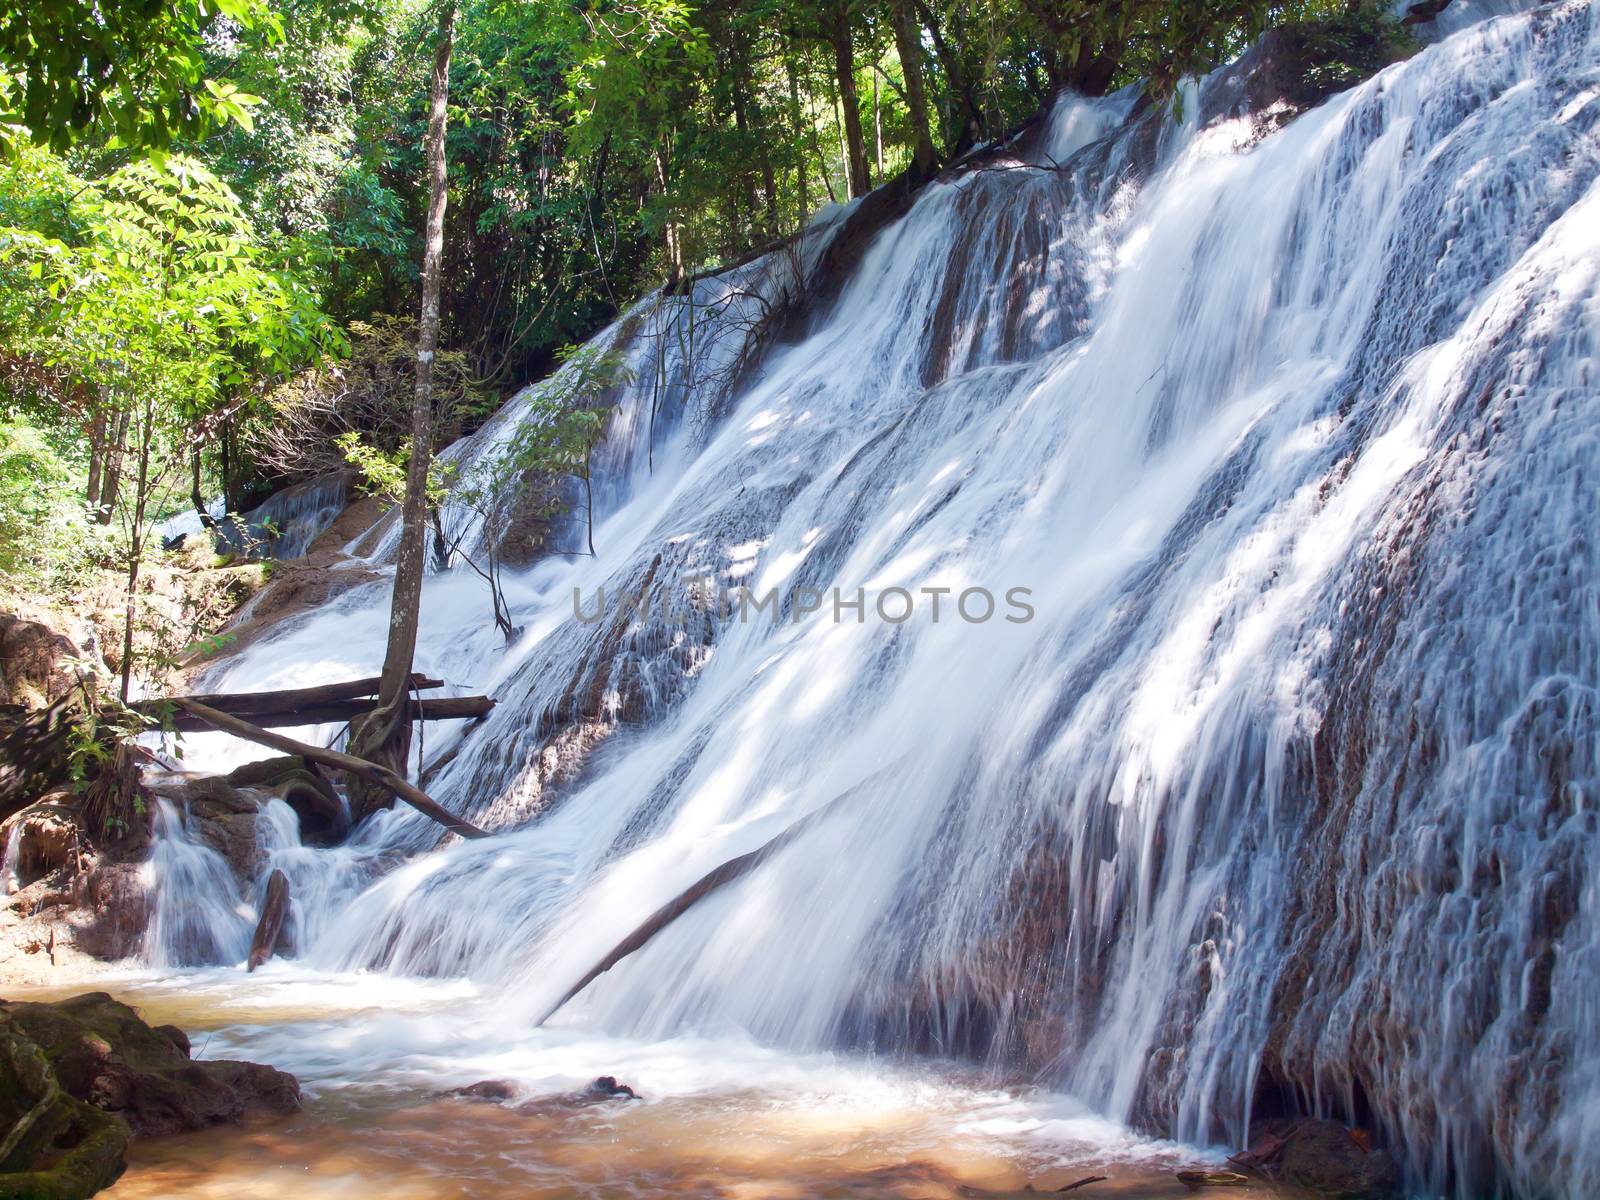 Pha Tat Waterfall, Khuean Srinagarindra National Park, Kanchanaburi, Thailand